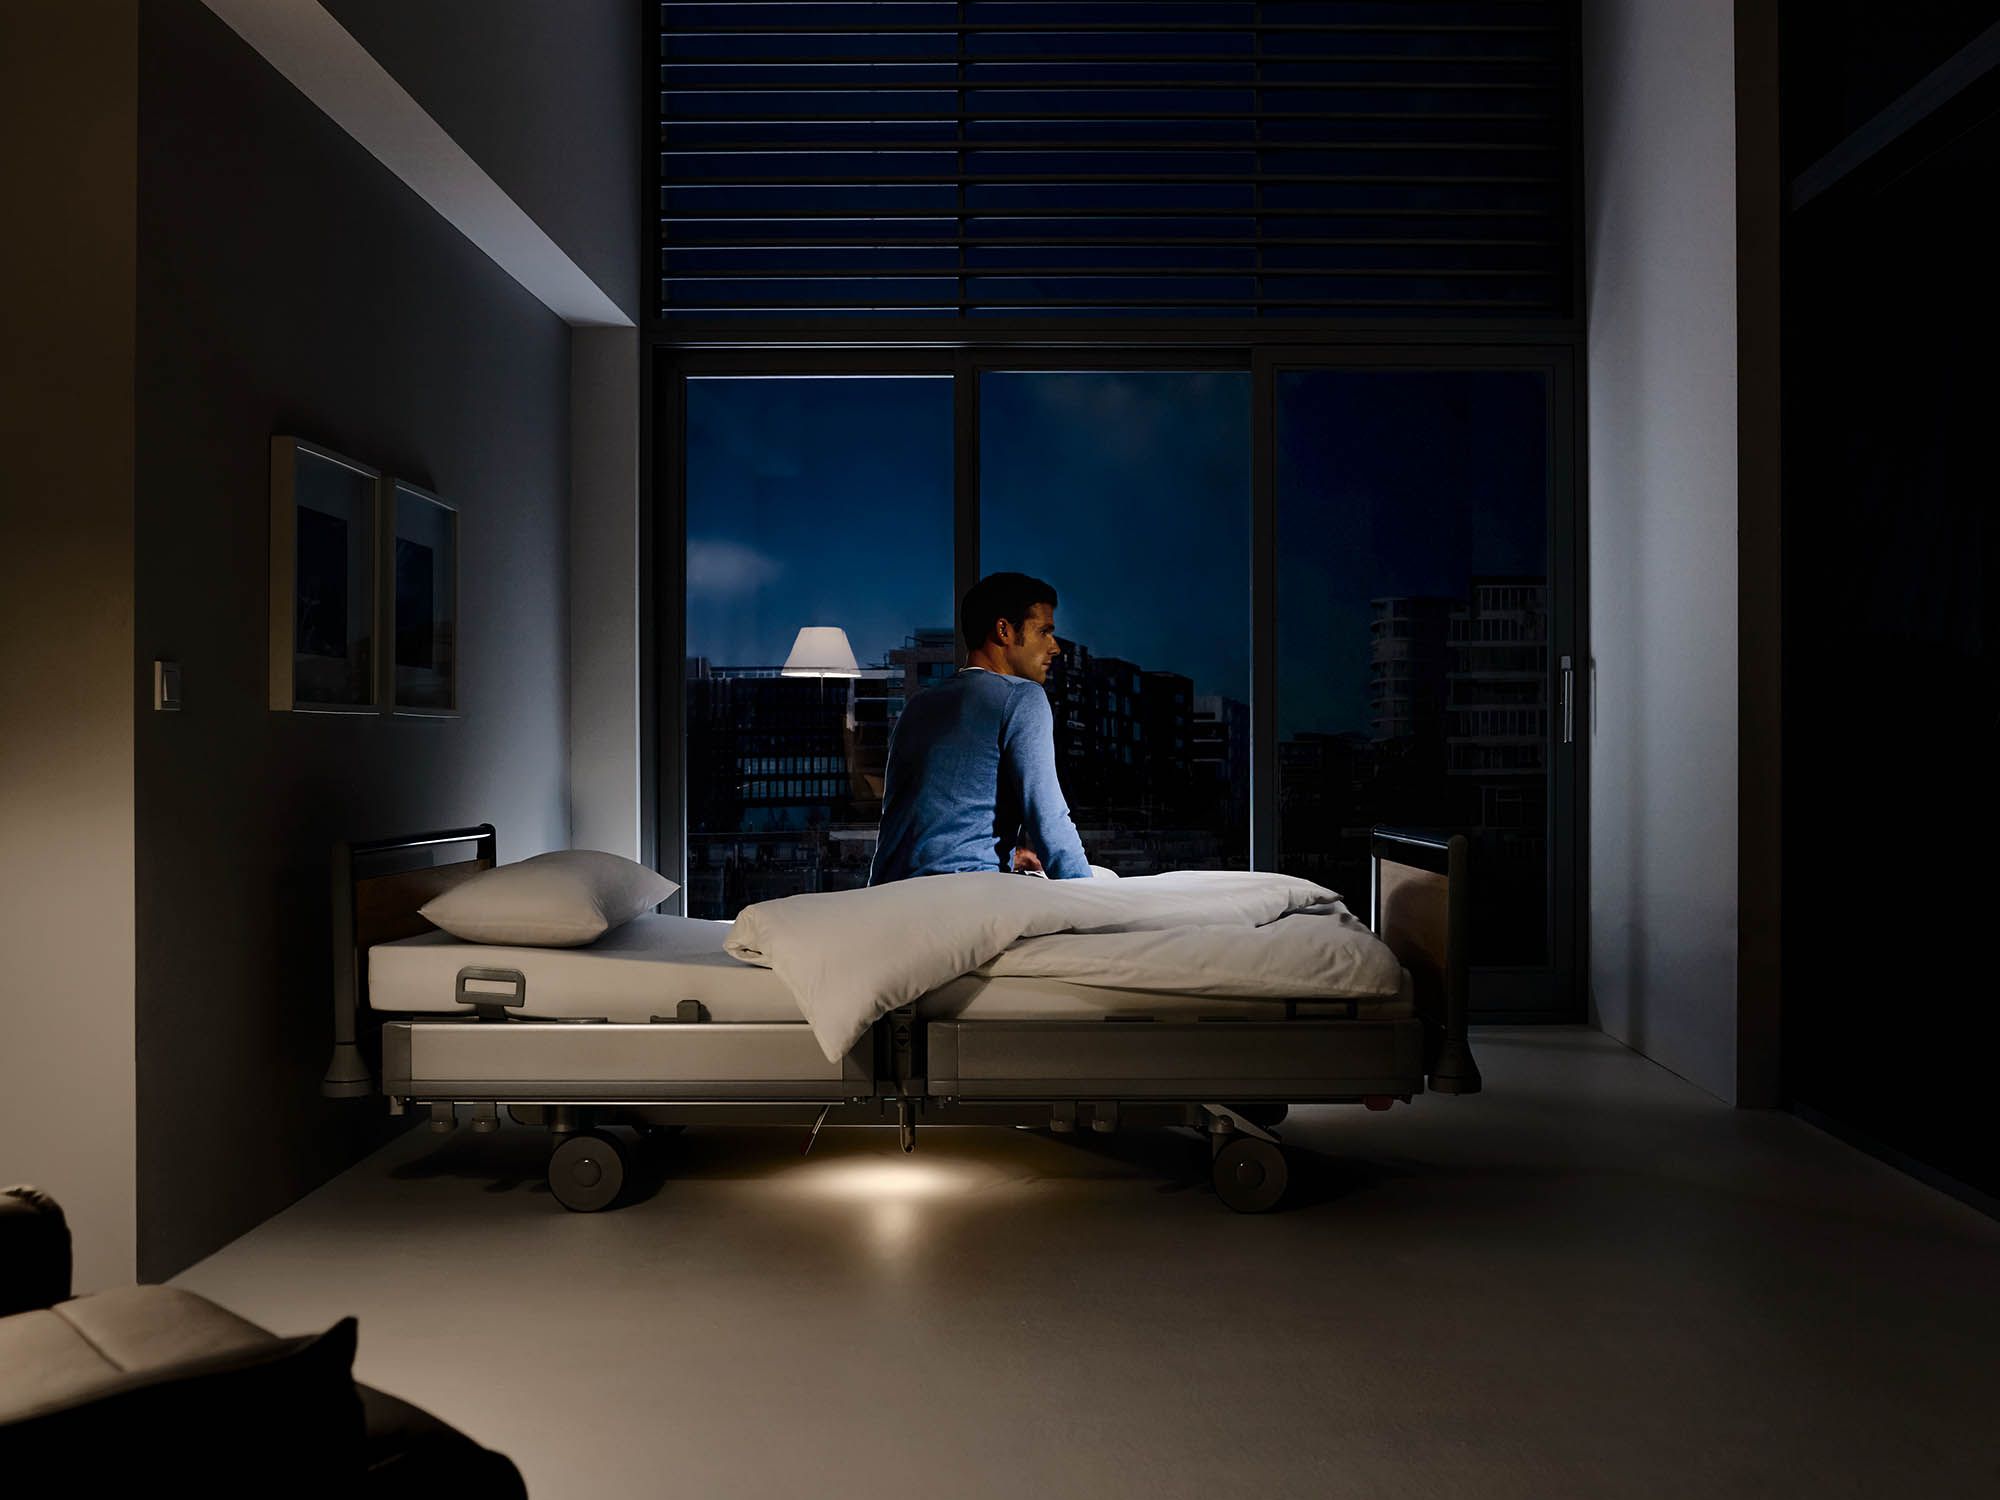 De vloerverlichting ter oriëntatie 's nachts op het ziekenhuisbed Puro